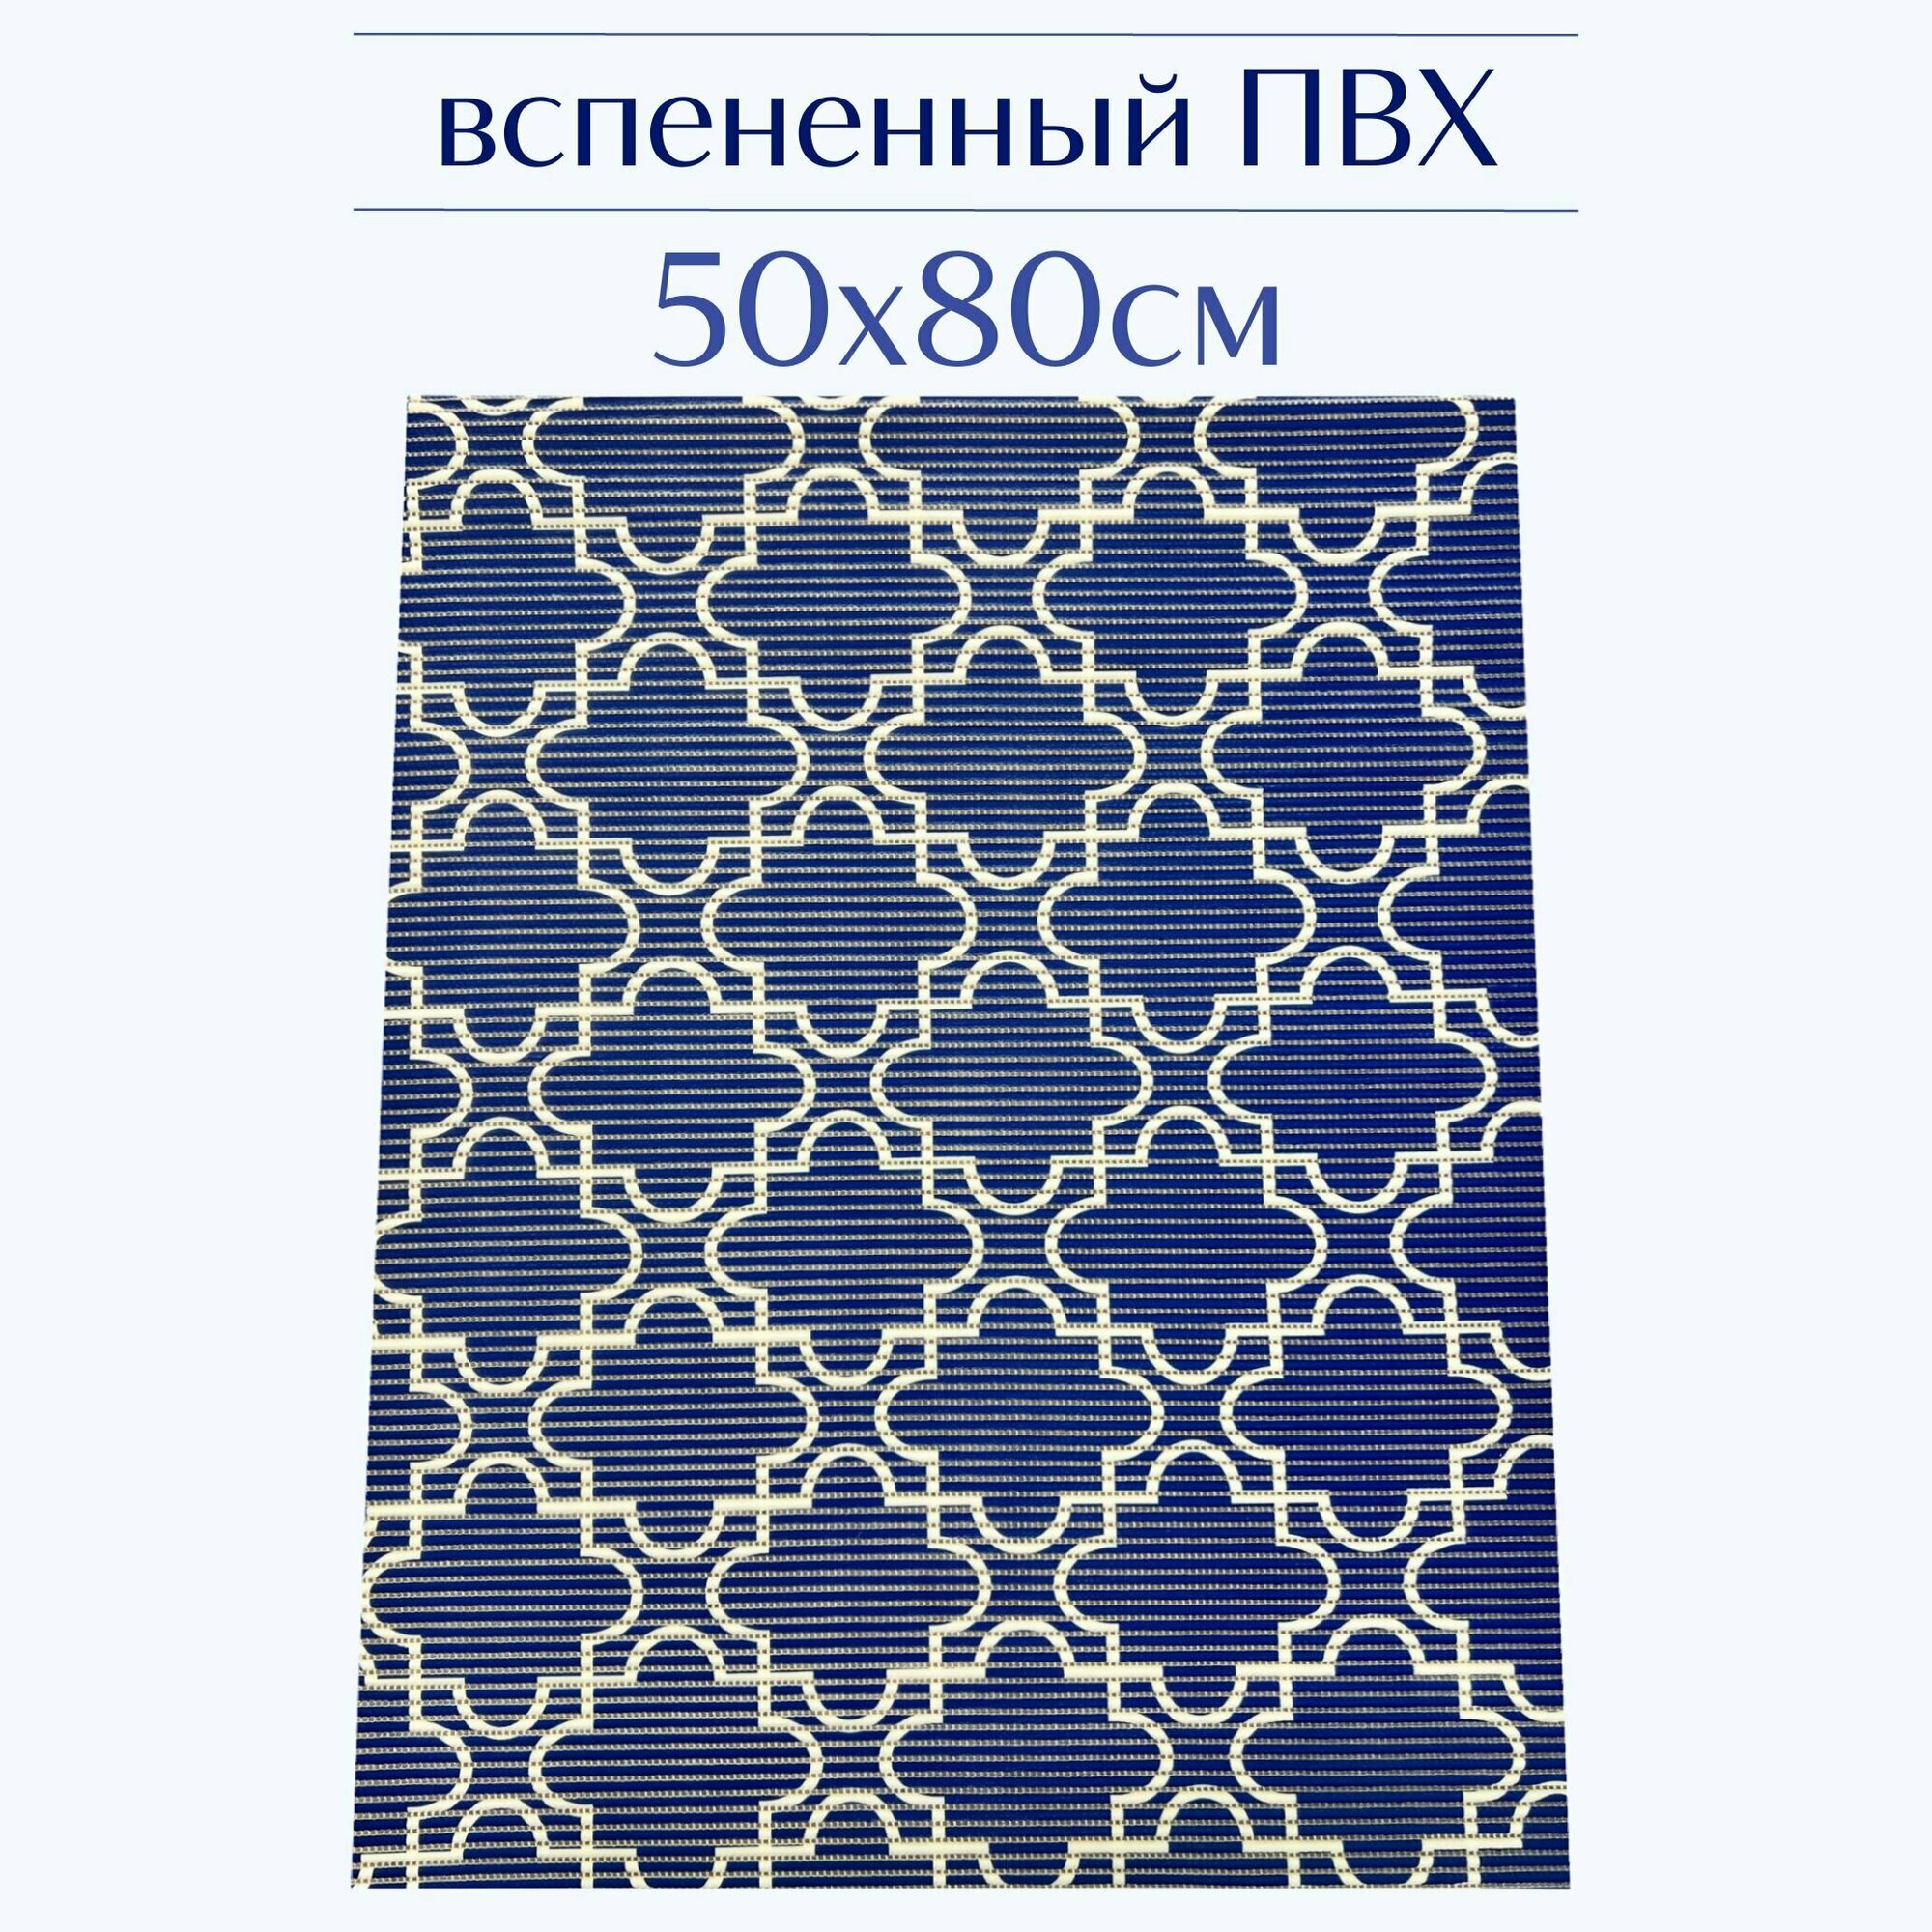 Напольный коврик для ванной из вспененного ПВХ 50x80 см темно-синий/белый с рисунком